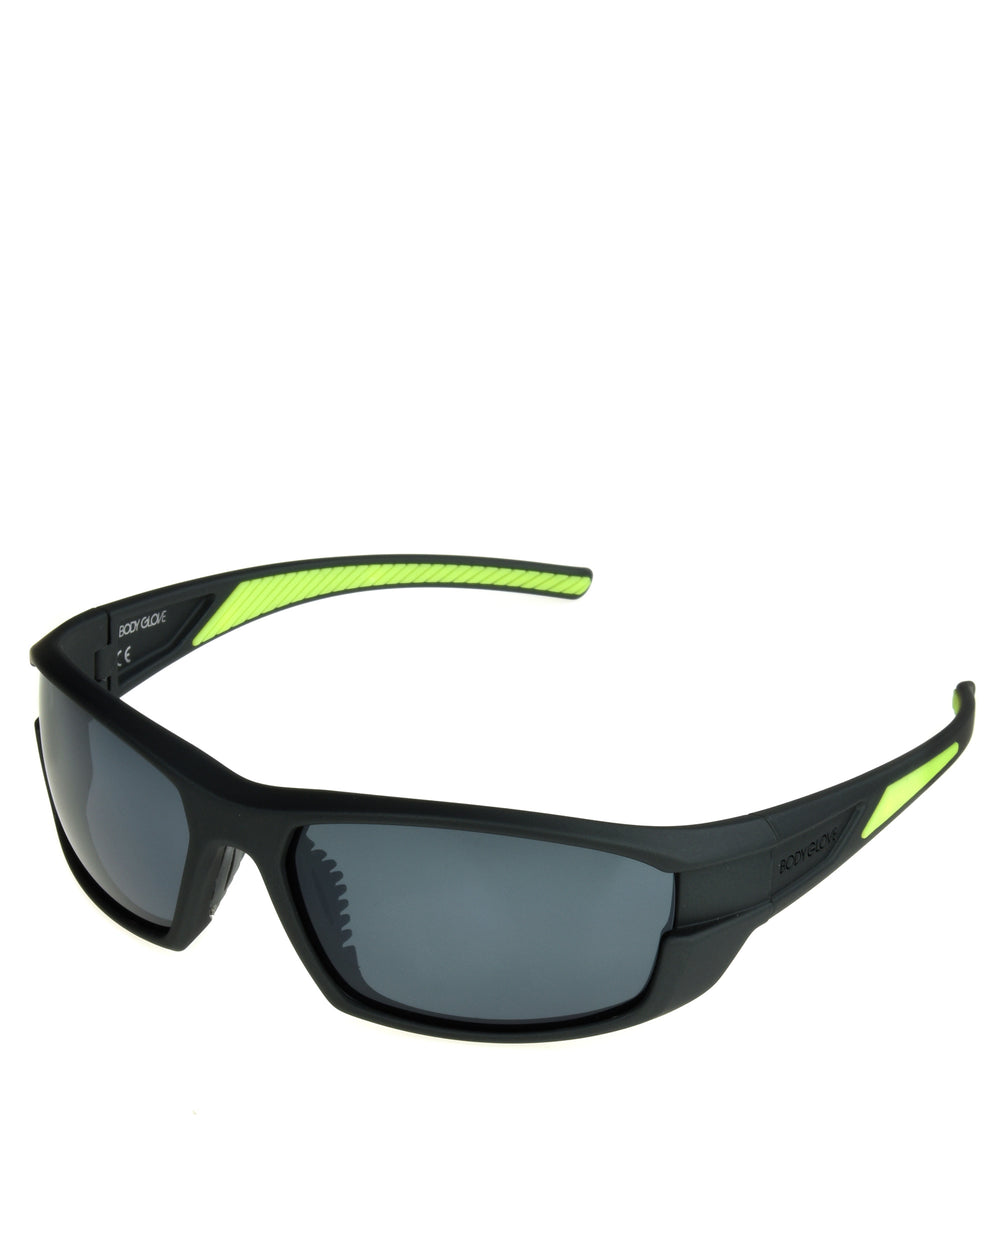 Men's BG1801 Polarized Sunglasses - Graphite - Body Glove